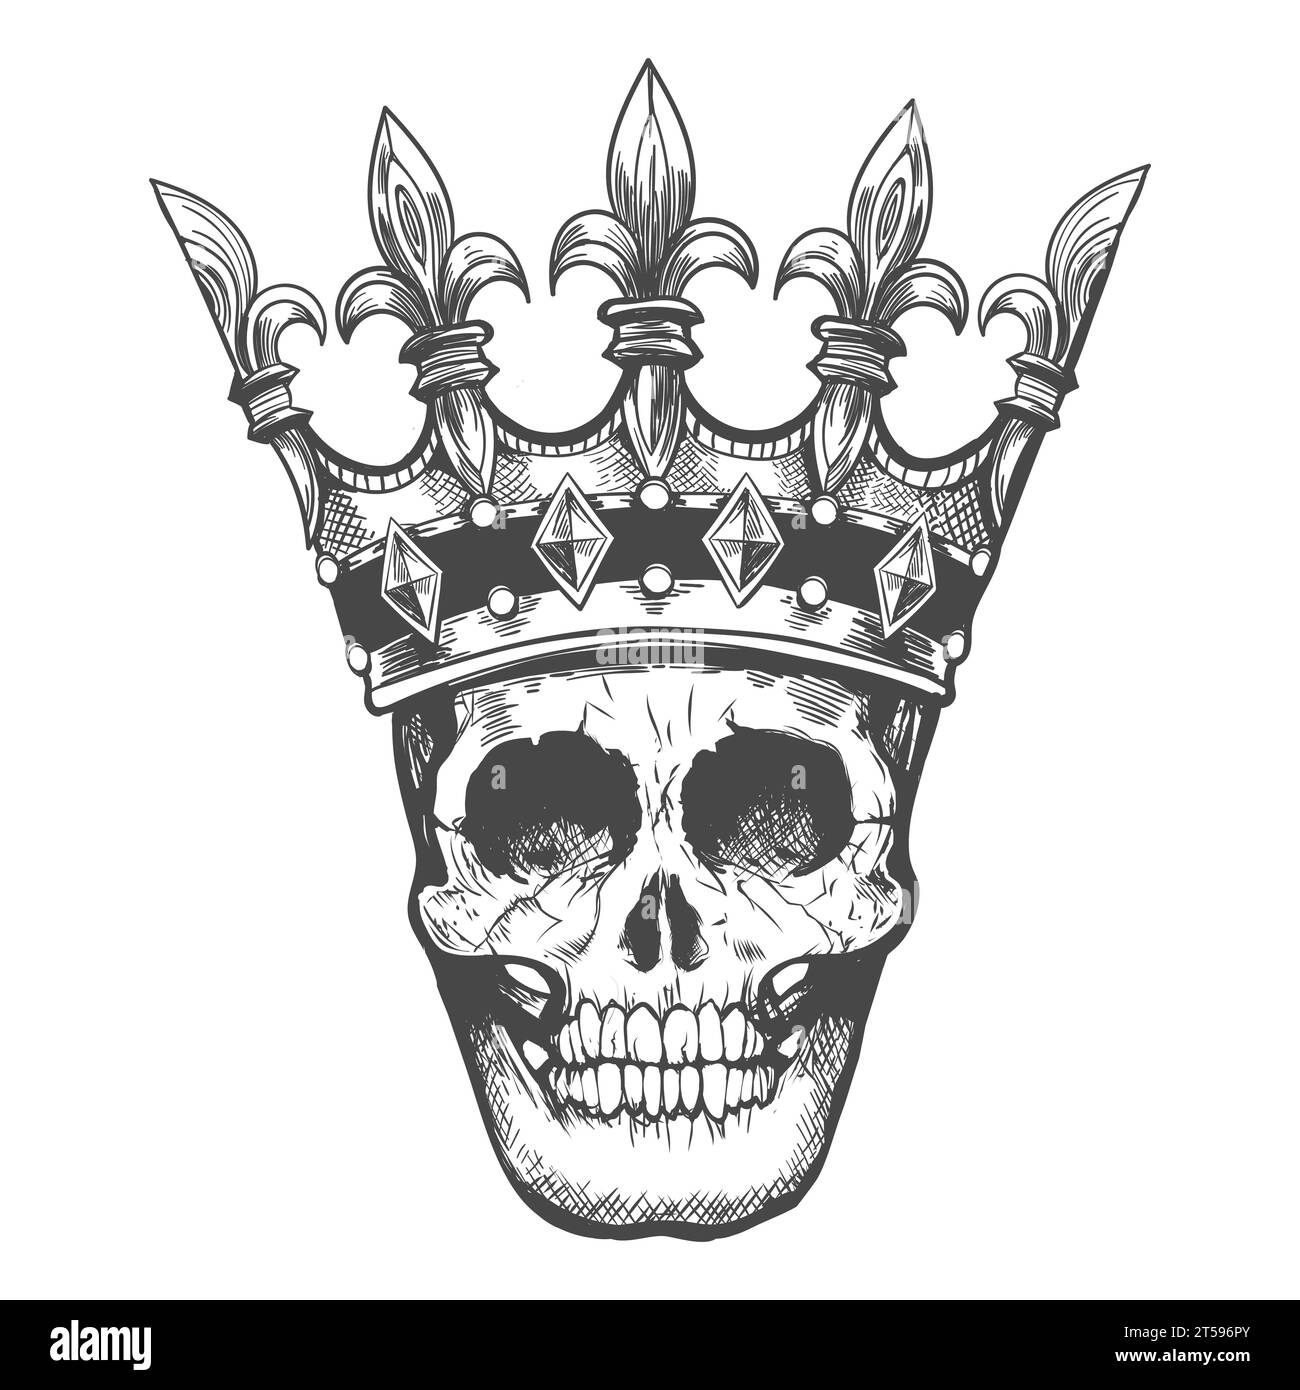 Incisione tatuaggio monocromatico del cranio umano in un'illustrazione vettoriale della corona isolata su bianco. Illustrazione Vettoriale